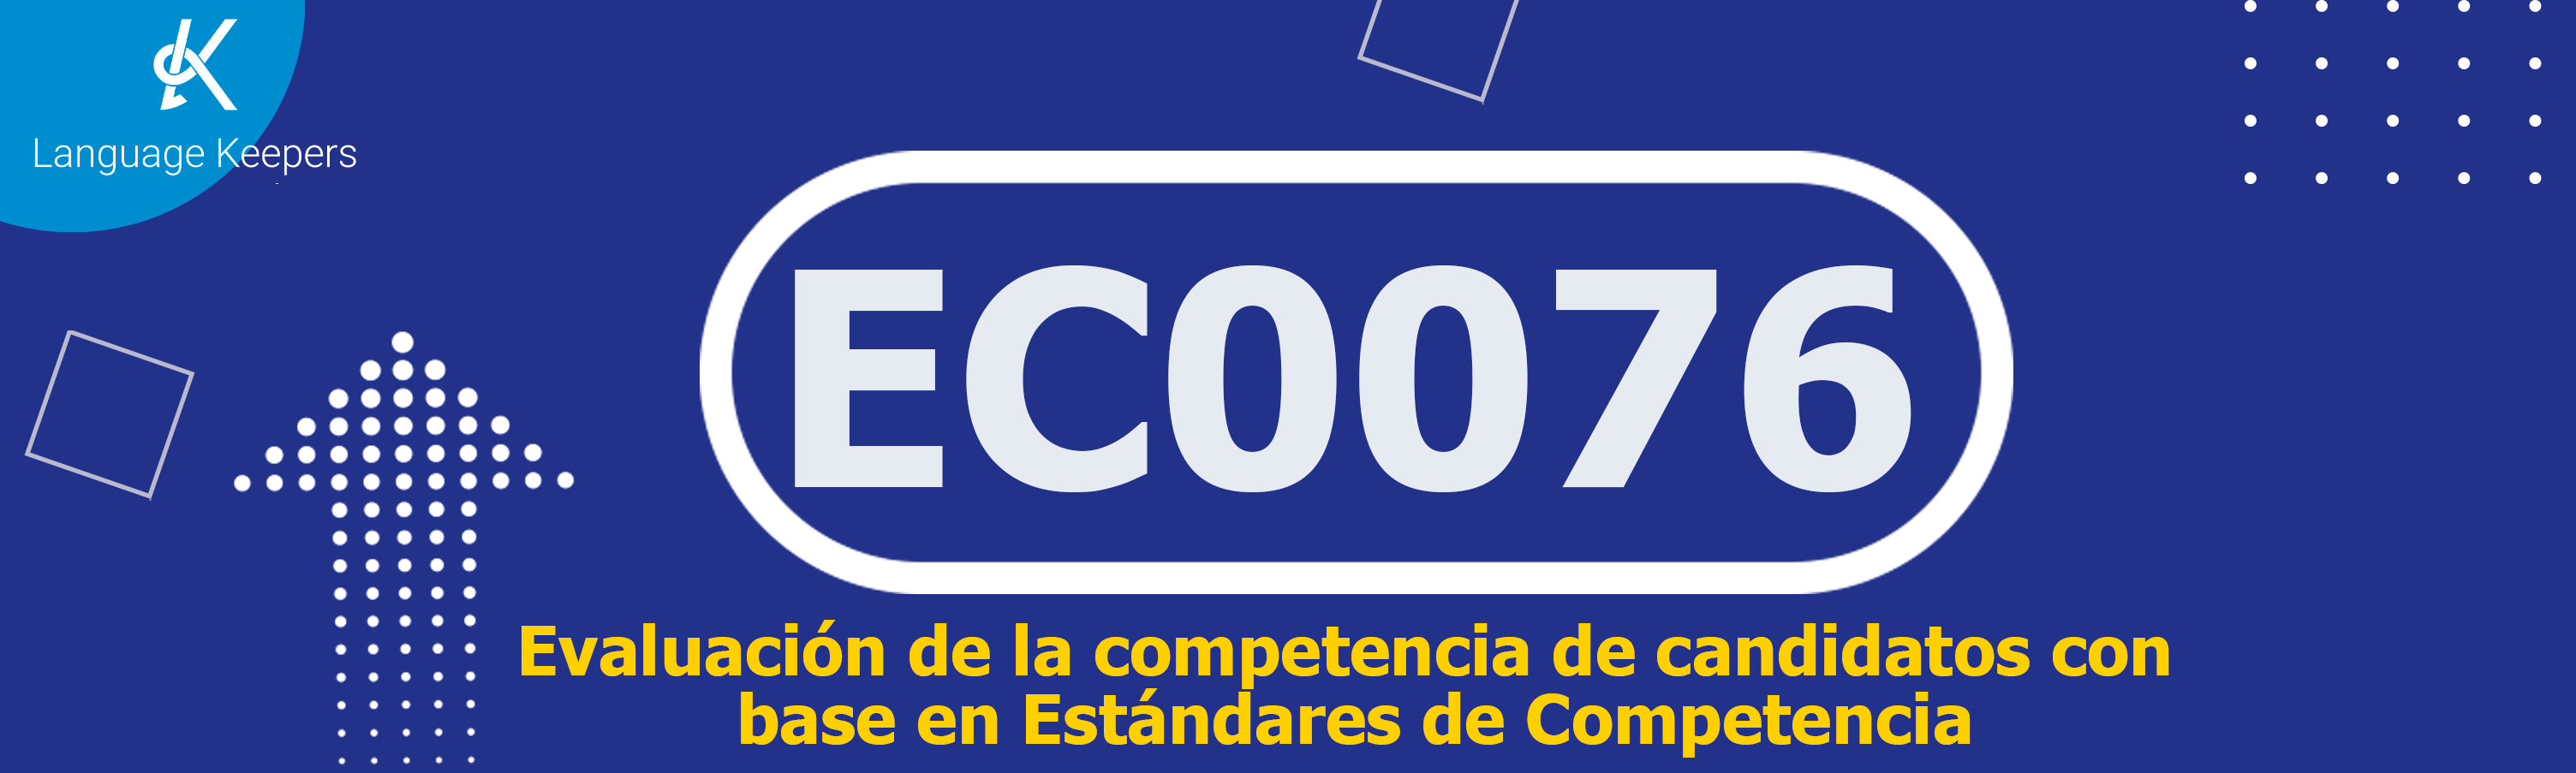 EC0076- Evaluación de la competencia de candidatos con base en Estándares de Competencia.